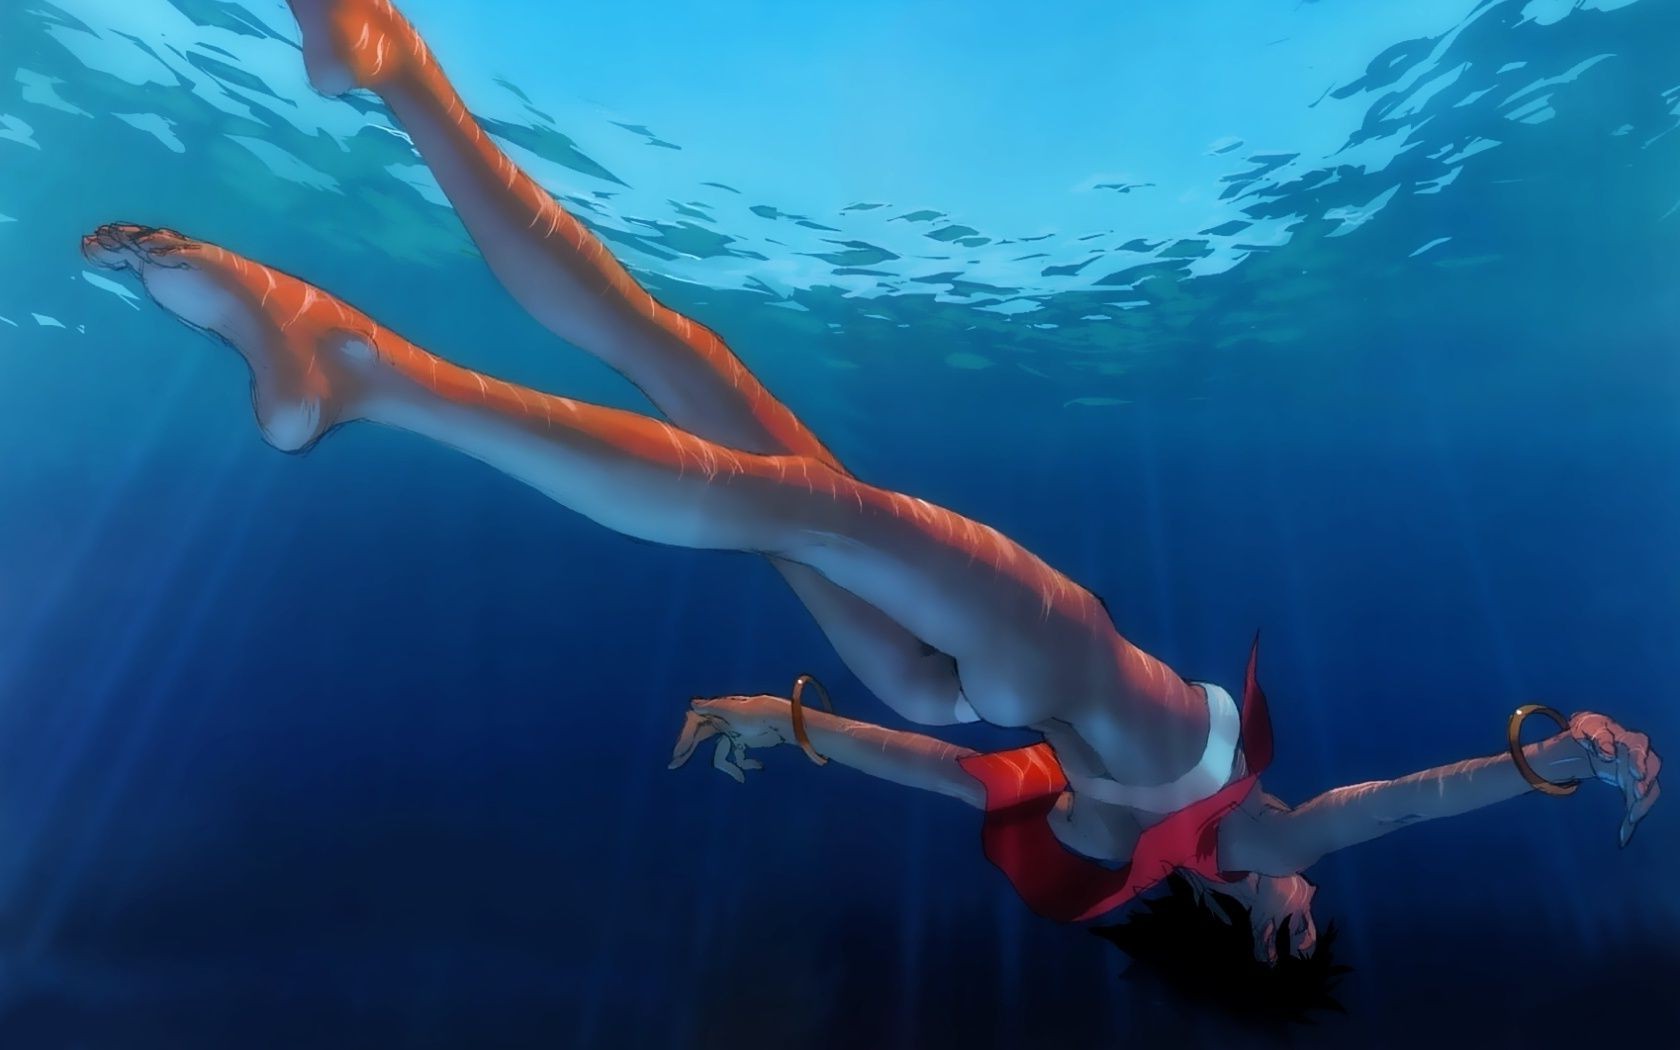 erotica underwater fish swimming water ocean one shark diving sea woman